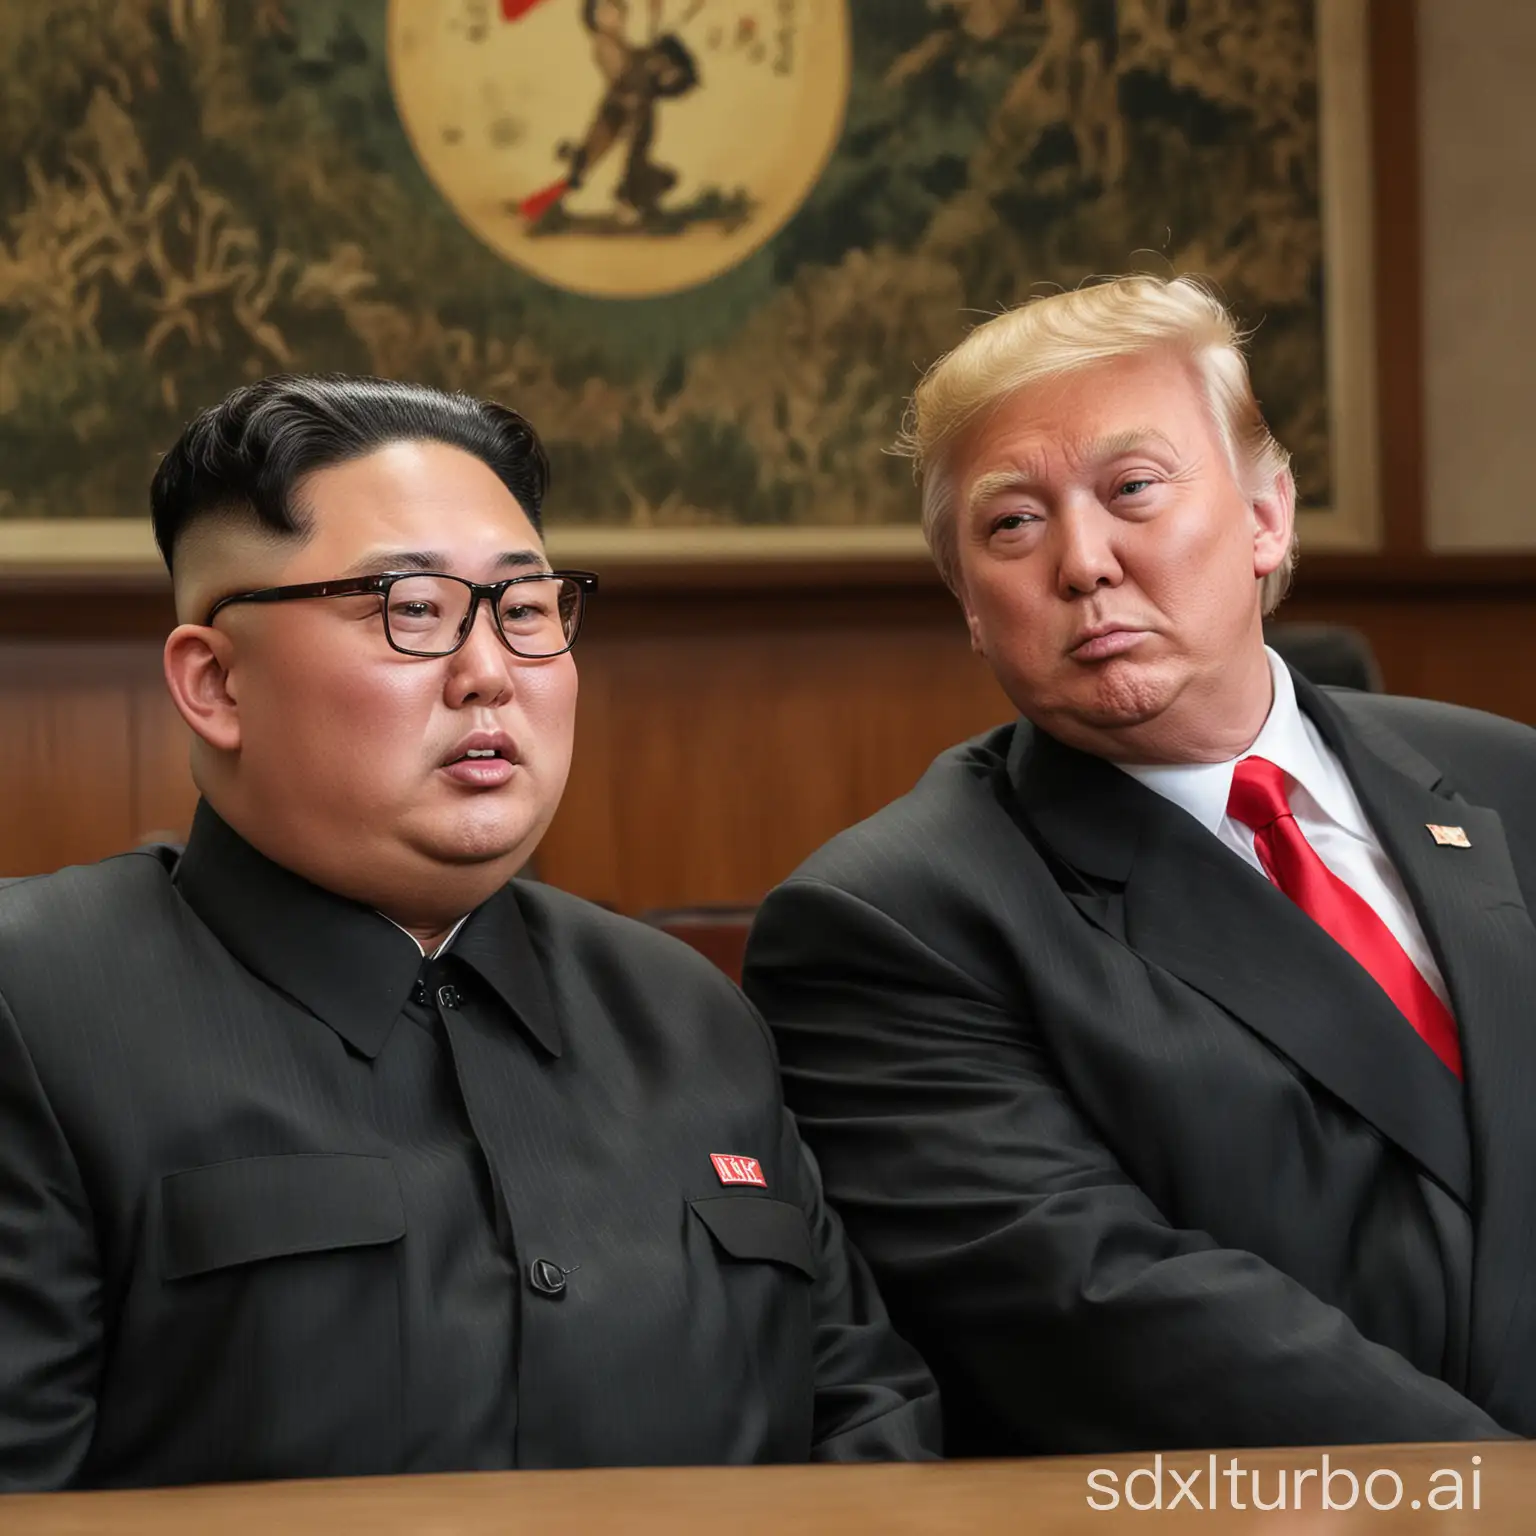 donald trump and north korean dictator kim jong un, DSLR 50mm, f/8